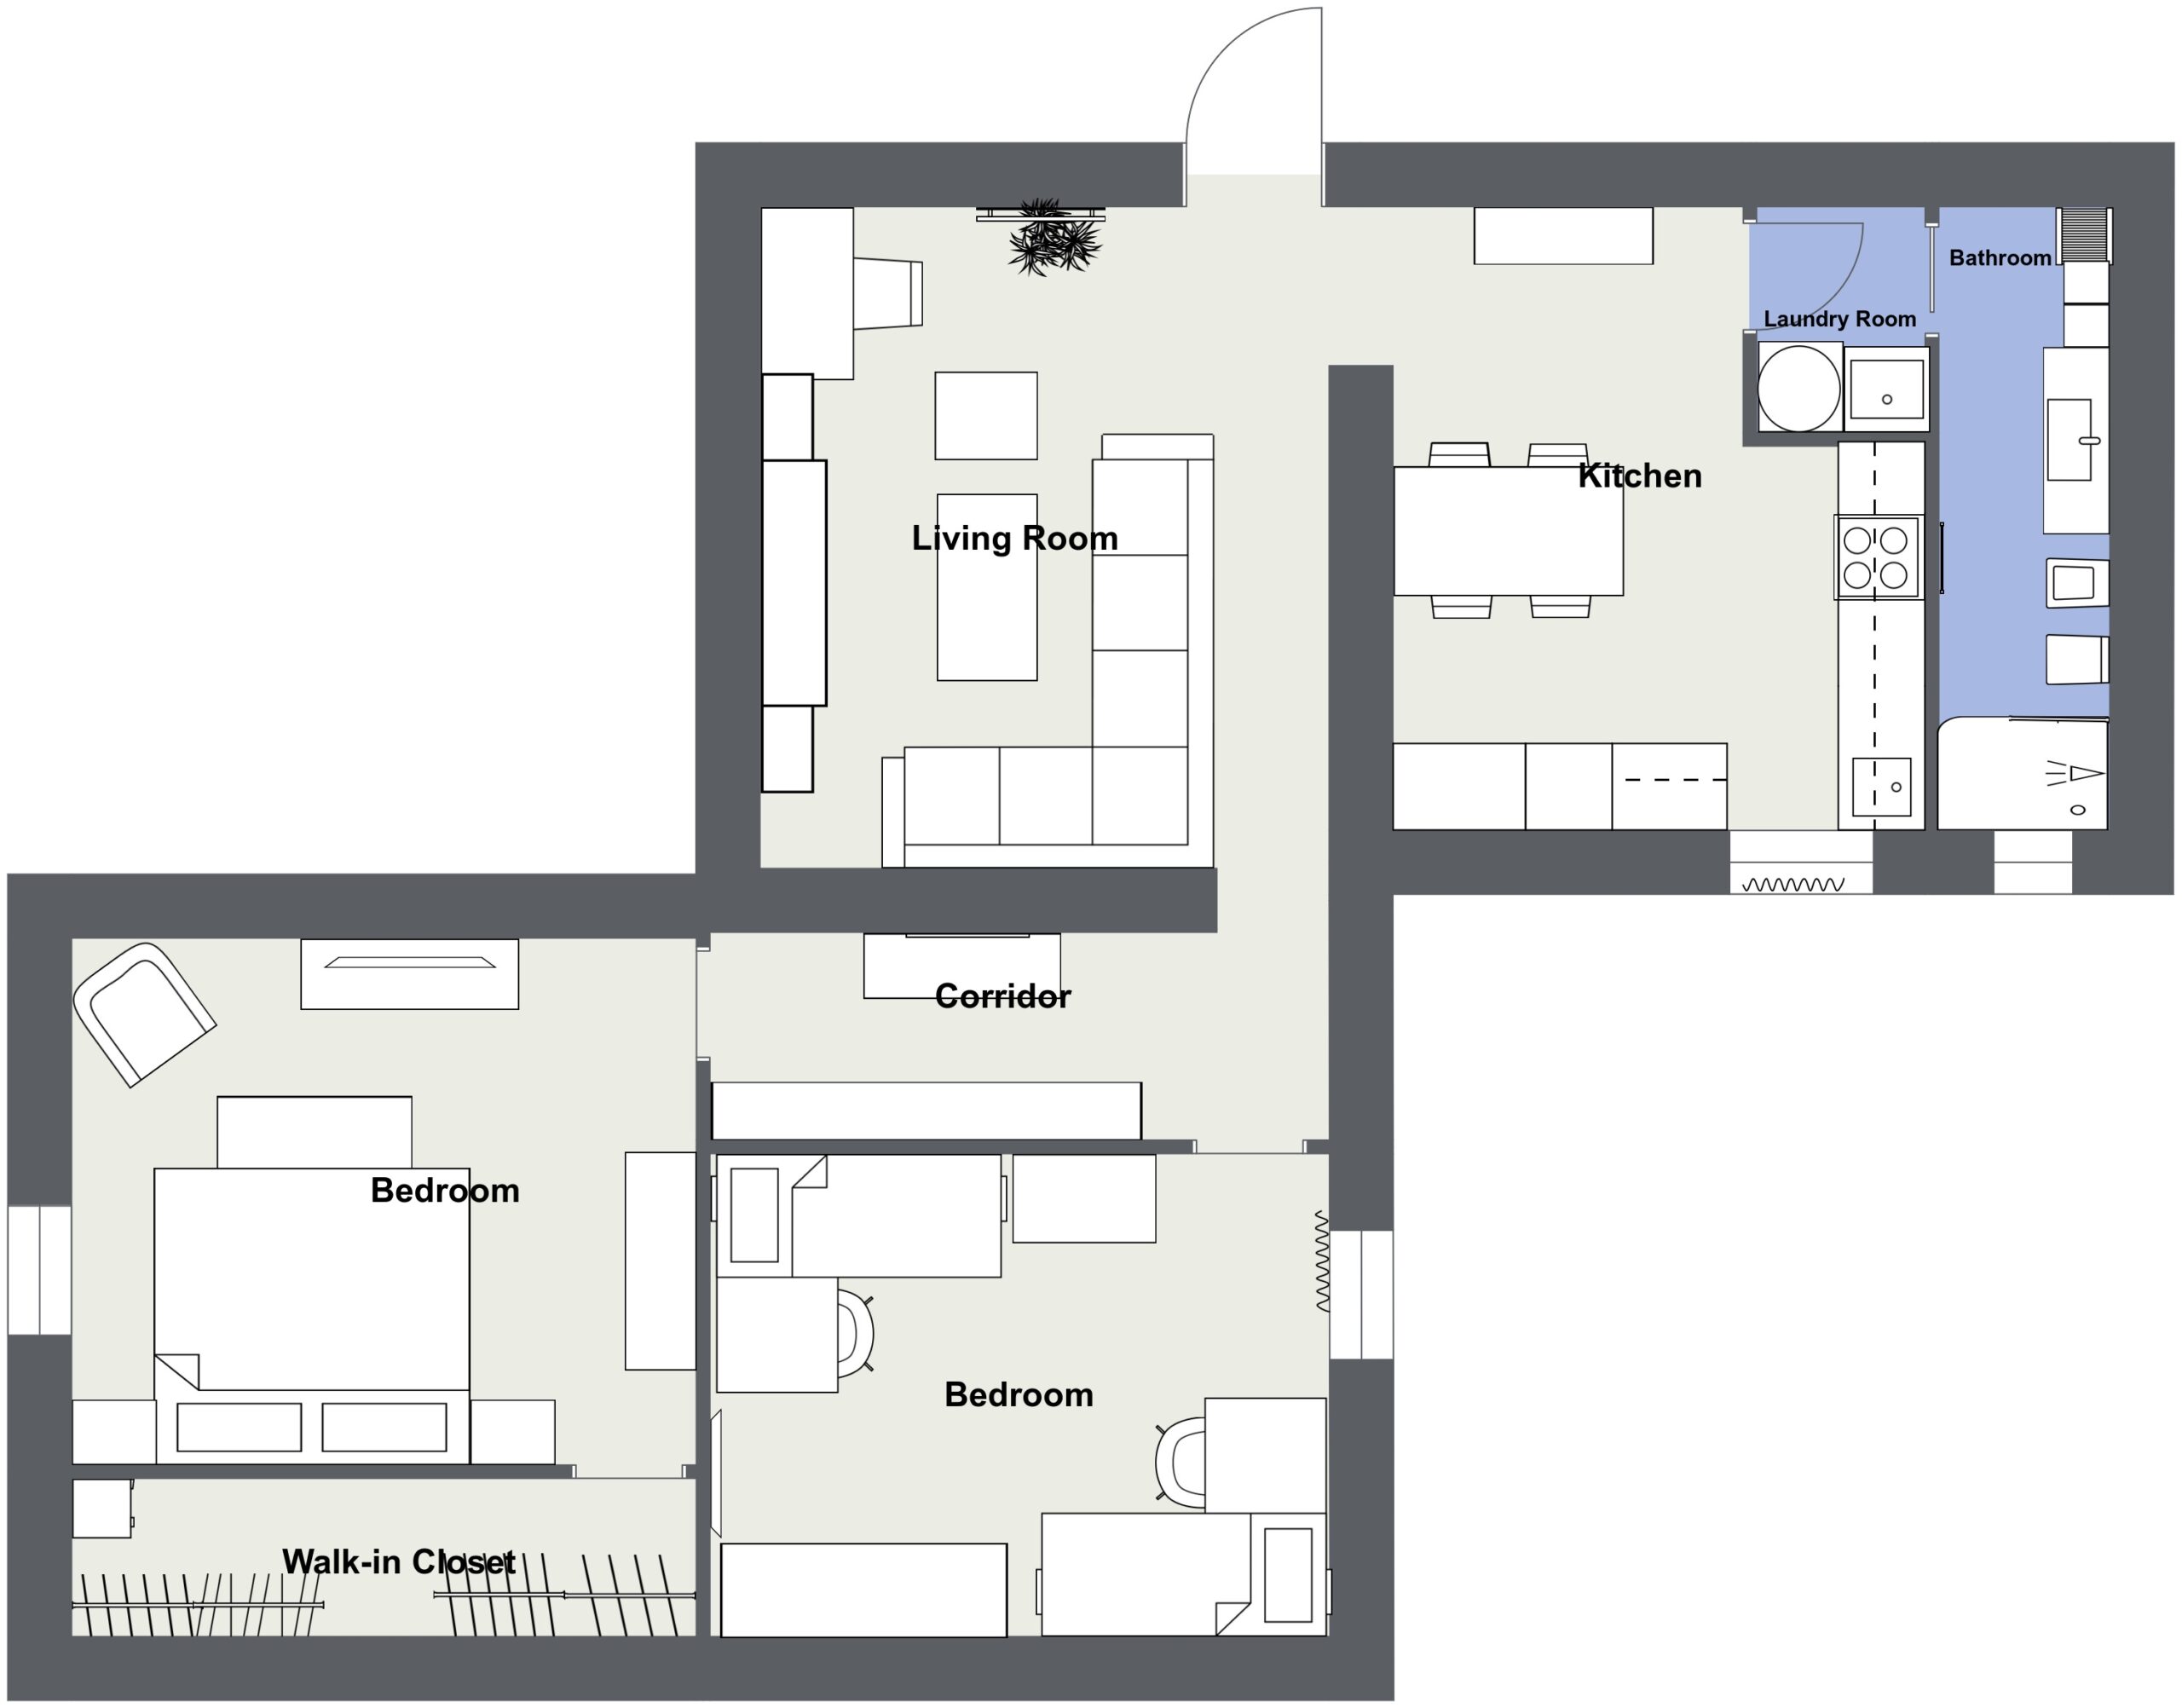 Via delle acque 4 - 520 - Level 1 - 2D Floor Plan